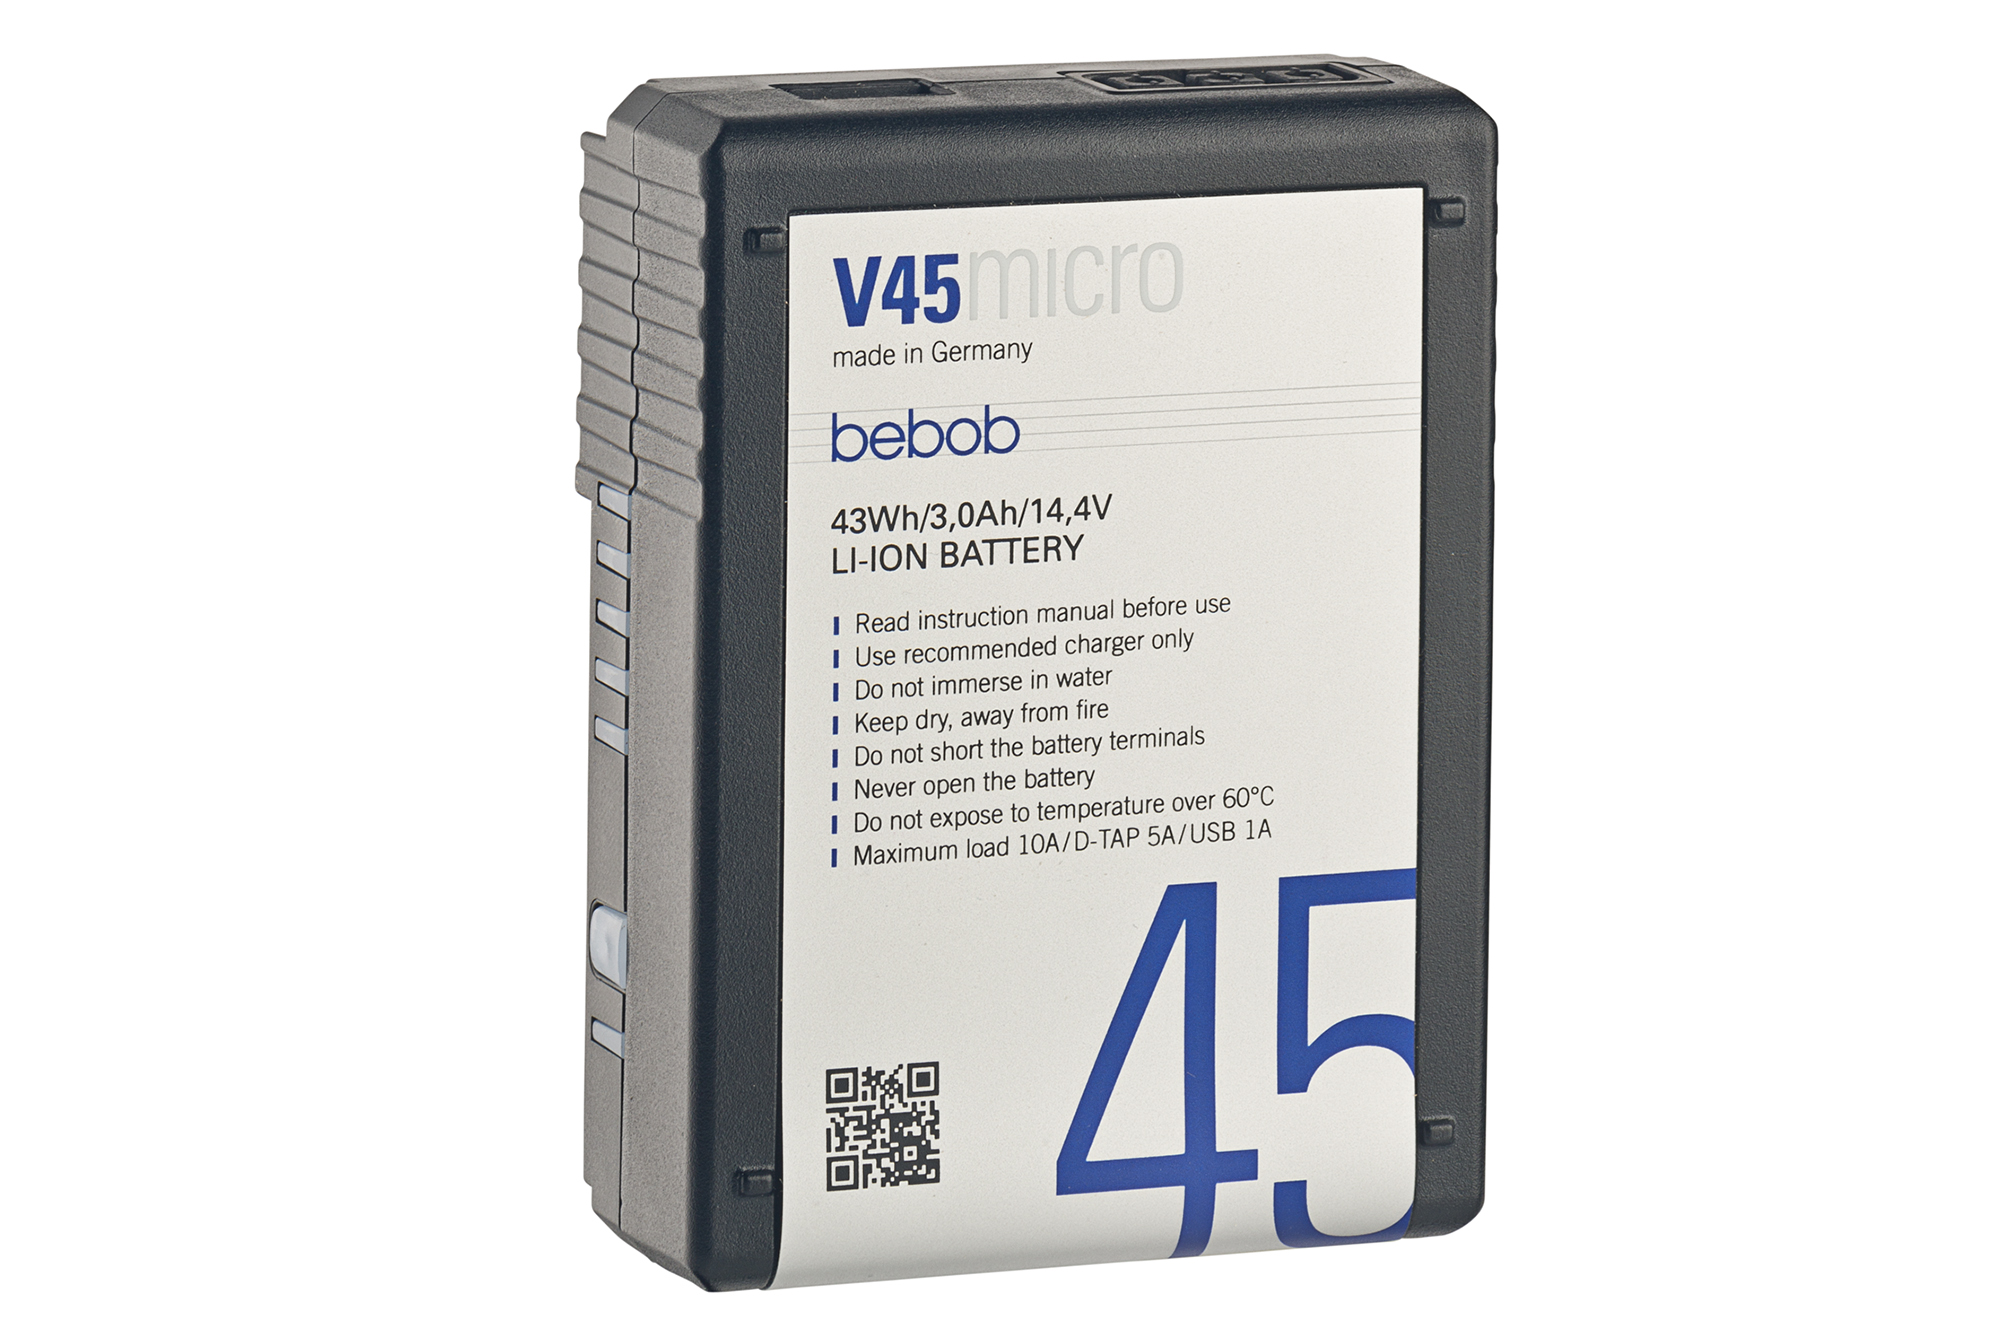 Bebob V 45 Micro